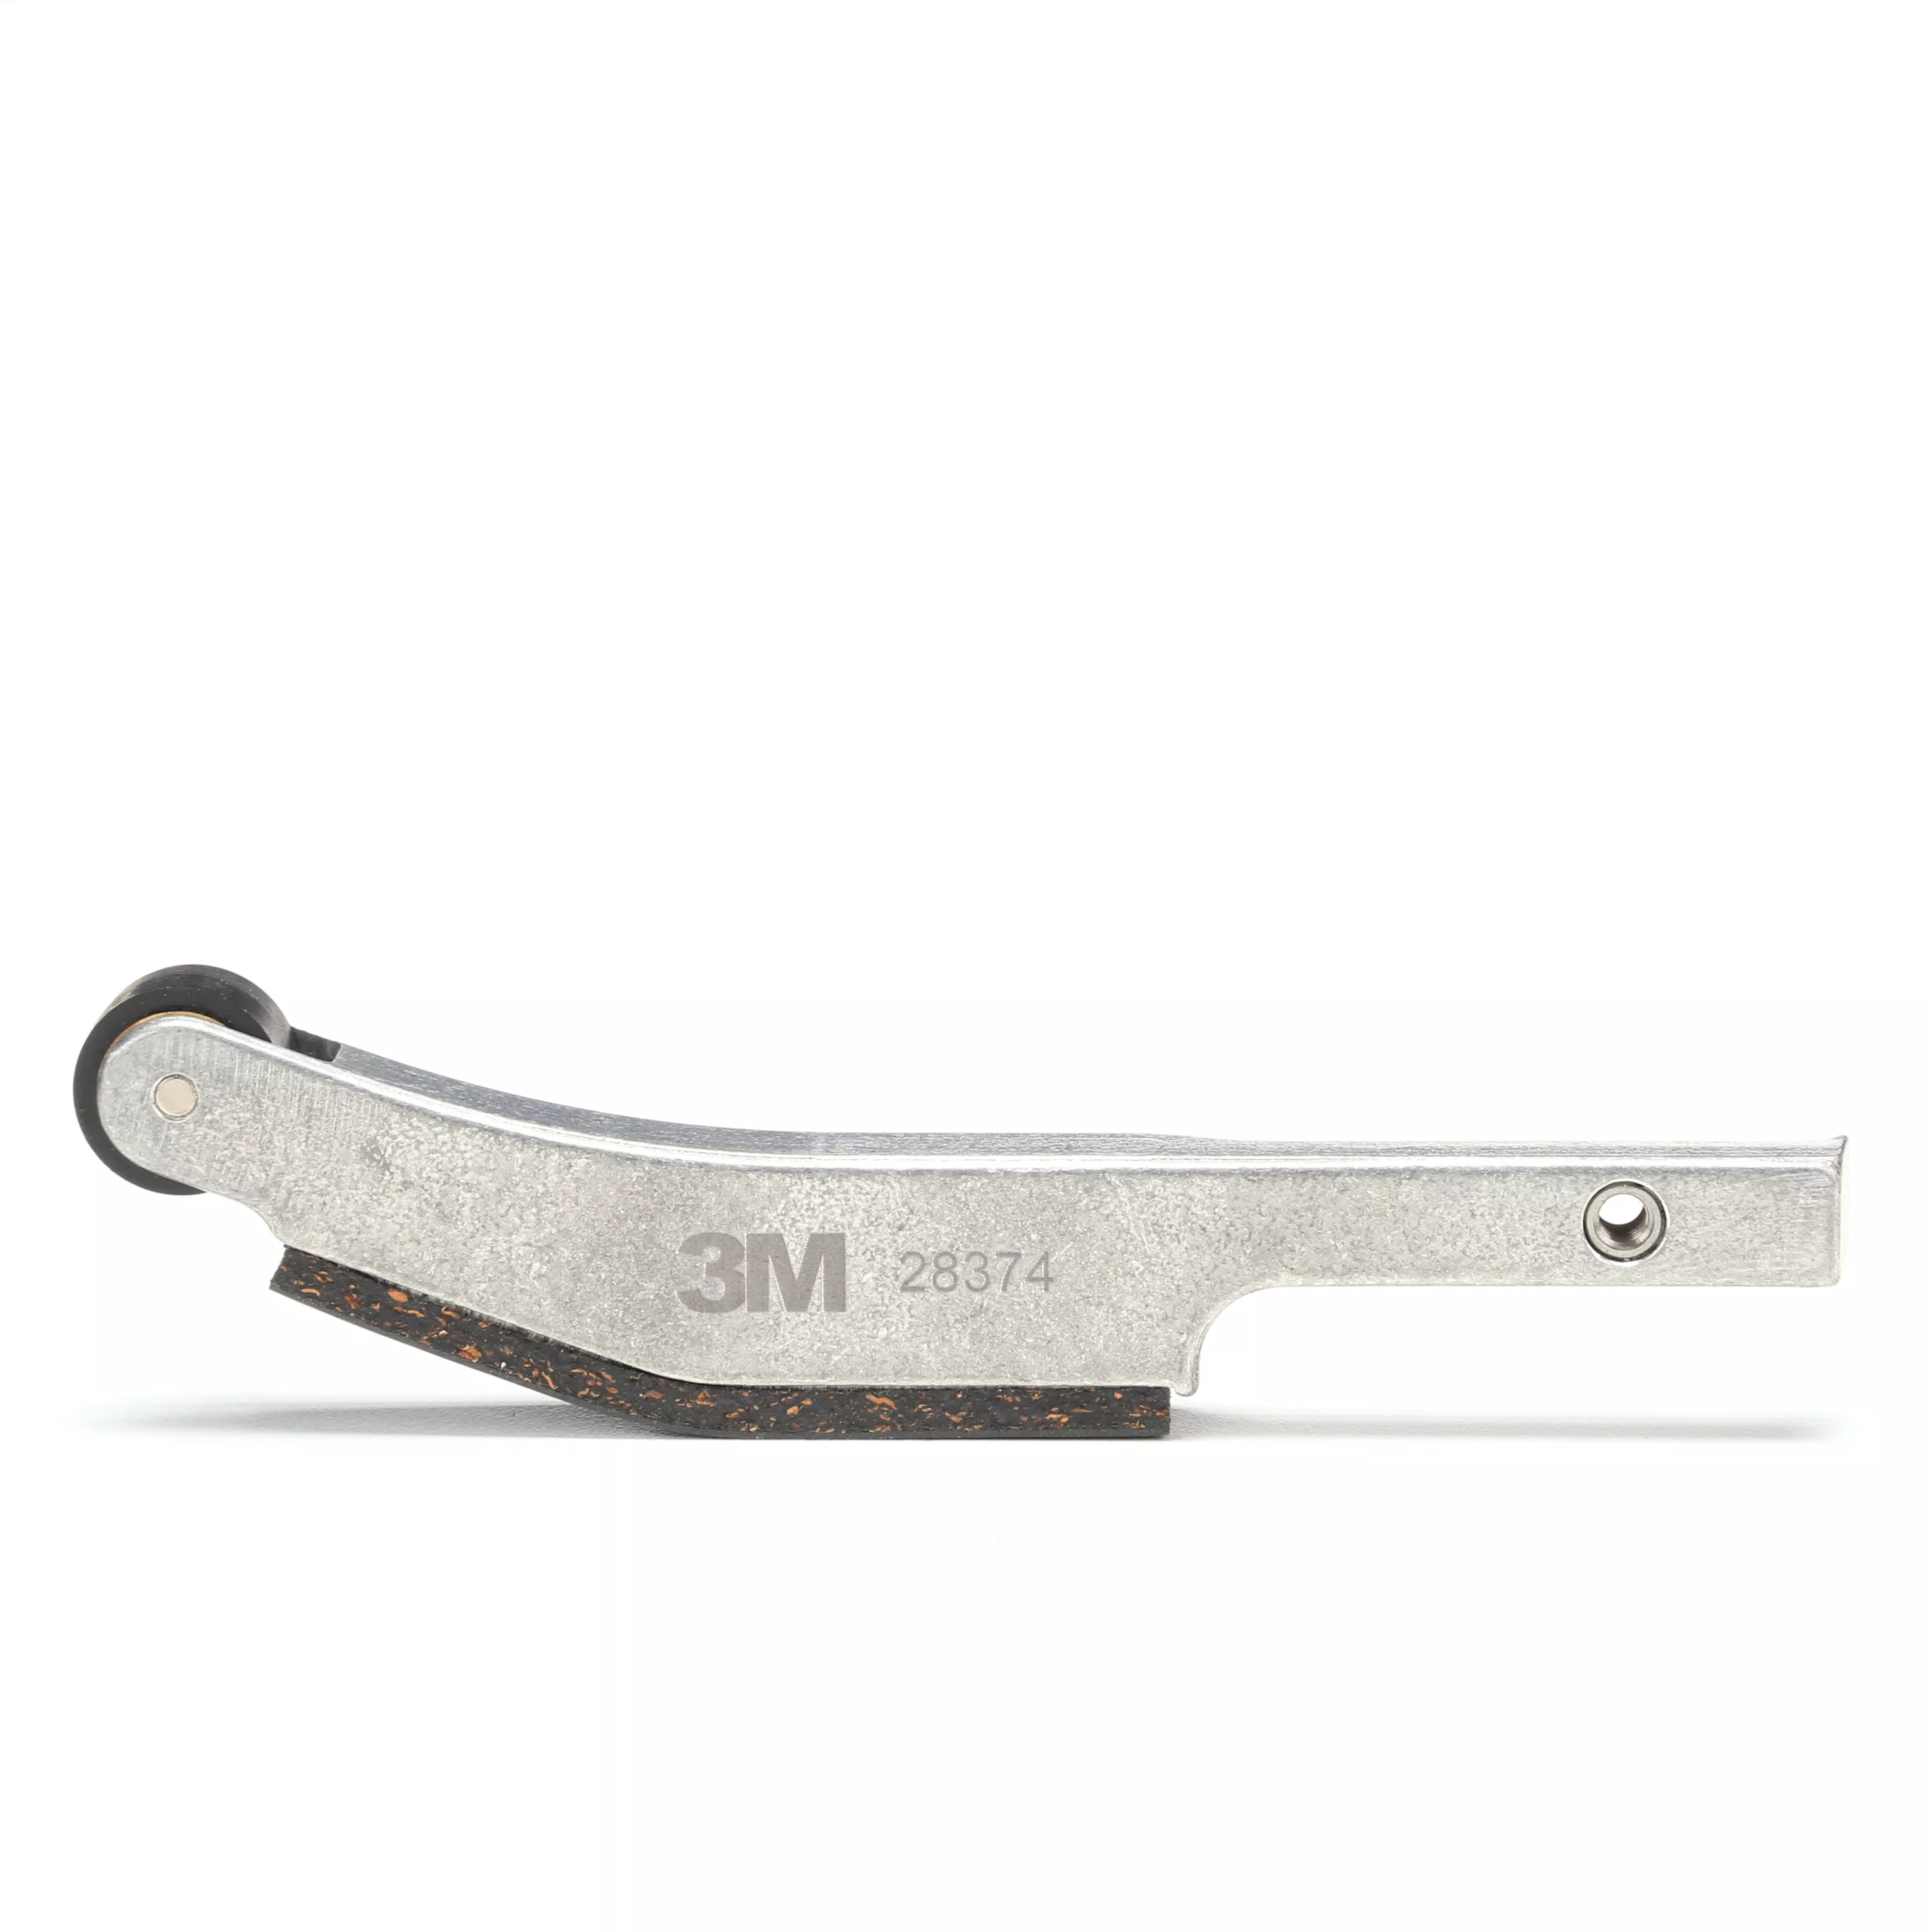 SKU 7000000438 | 3M™ File Belt Sander Attachment Arm